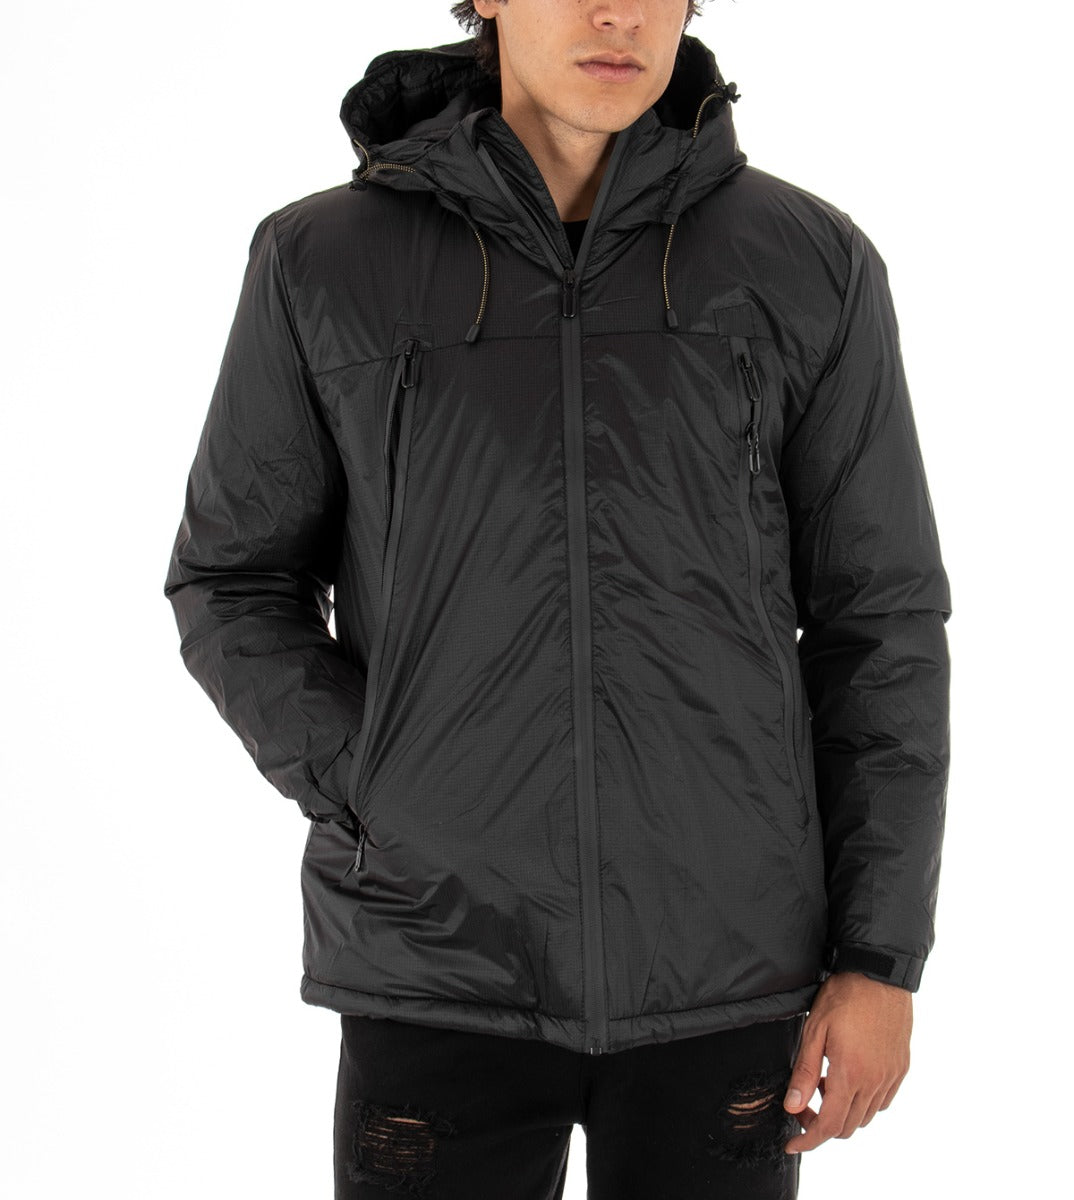 Men's Long Sleeves Solid Color Black Jacket Casual Hooded Zip Jacket GIOSAL